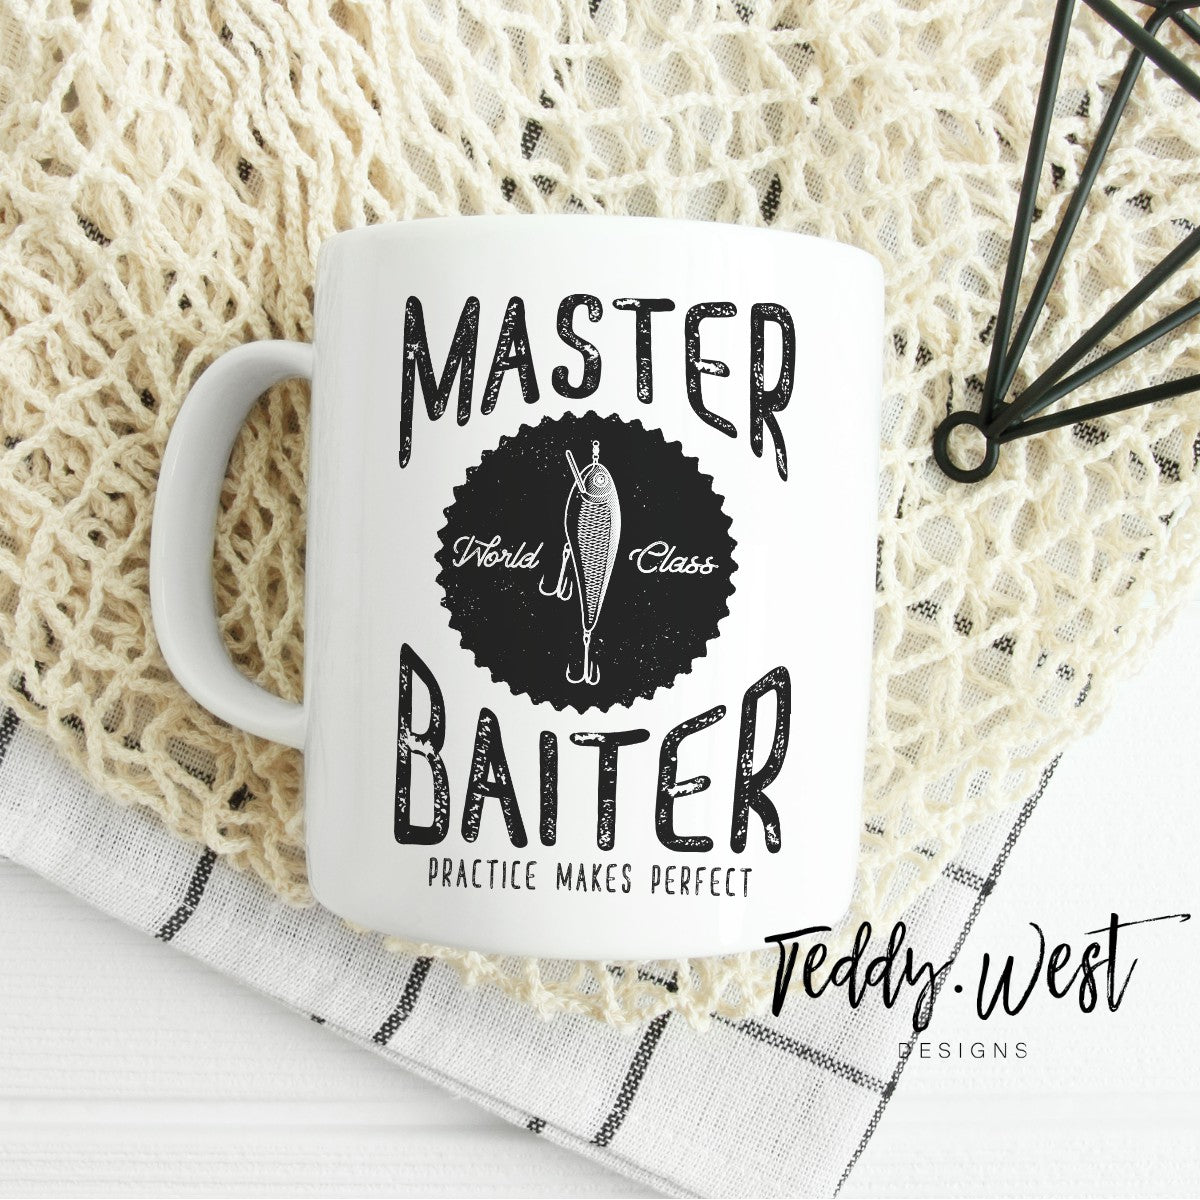 Master Baiter – Teddy West Designs